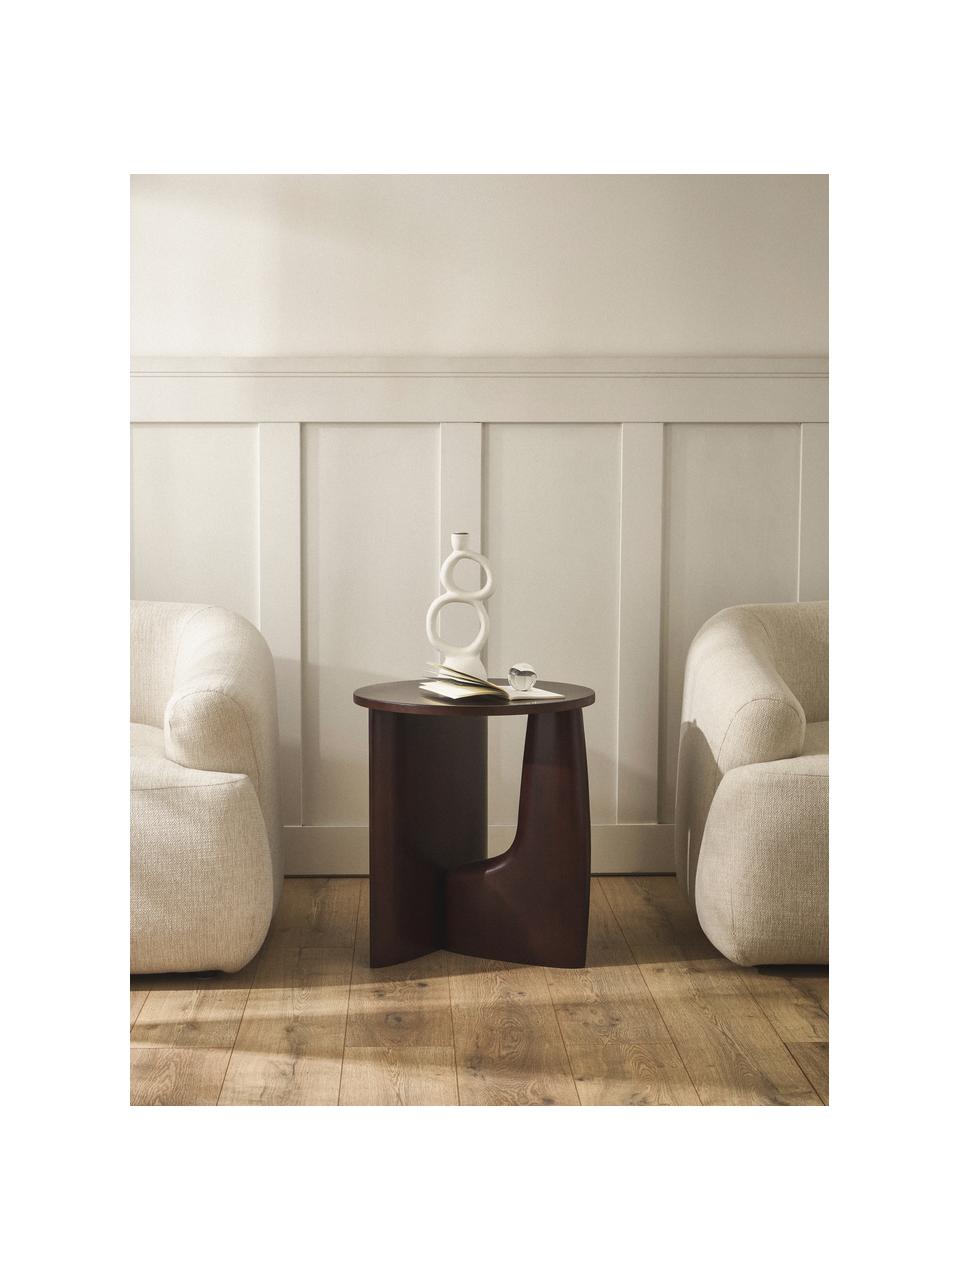 Kulatý dřevěný odkládací stolek Miya, Topol, tmavě hnědě lakovaný, Ø 53 cm, V 55 cm